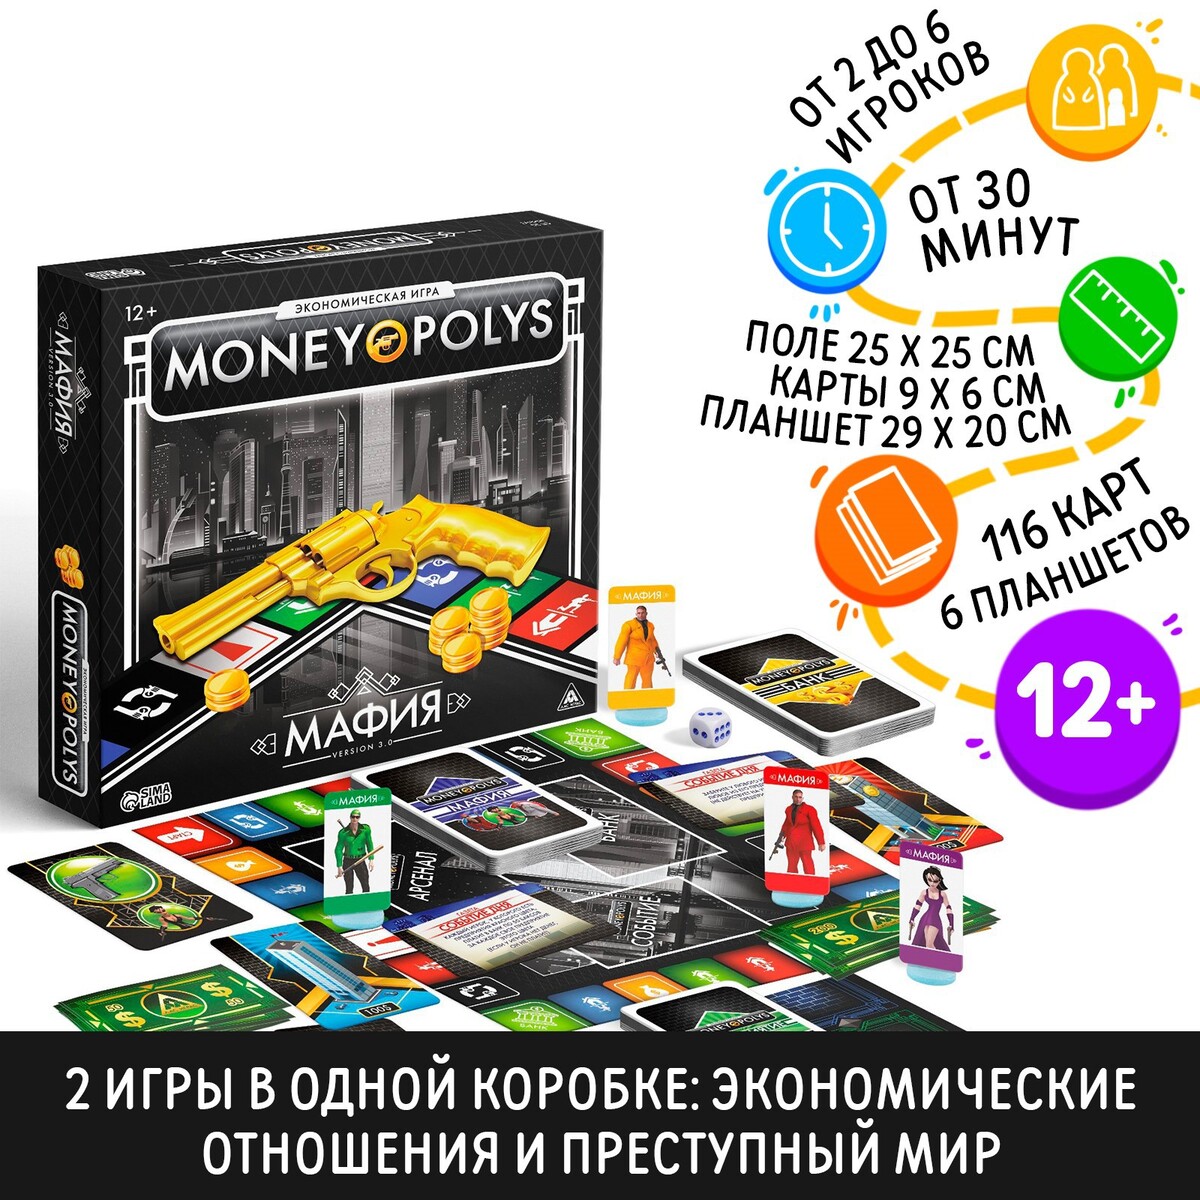 Настольная экономическая игра экономическая игра money polys зоопарк 4